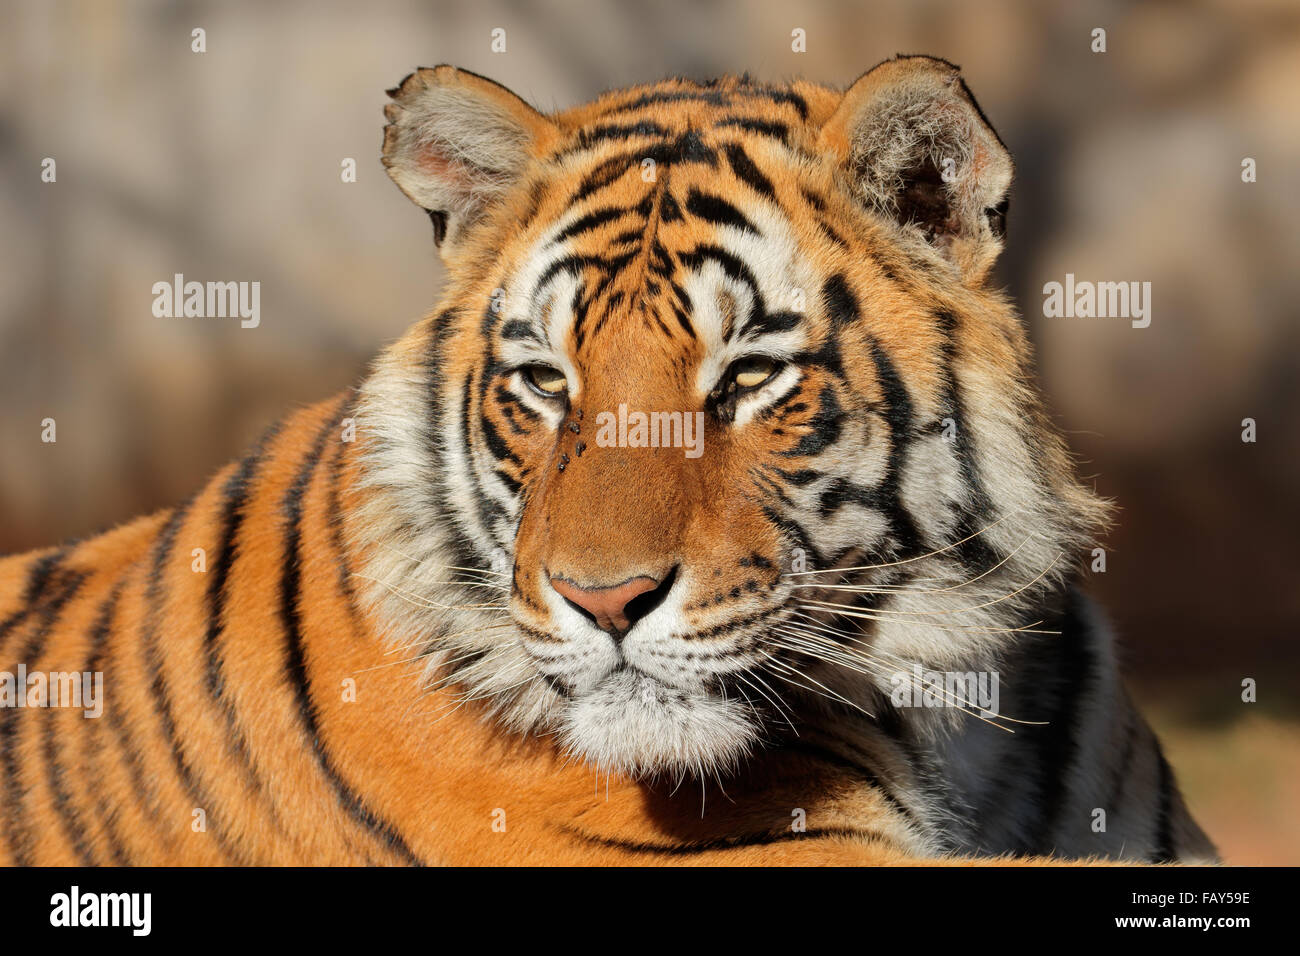 Portrait of a Bengal tiger (Panthera tigris bengalensis) Stock Photo